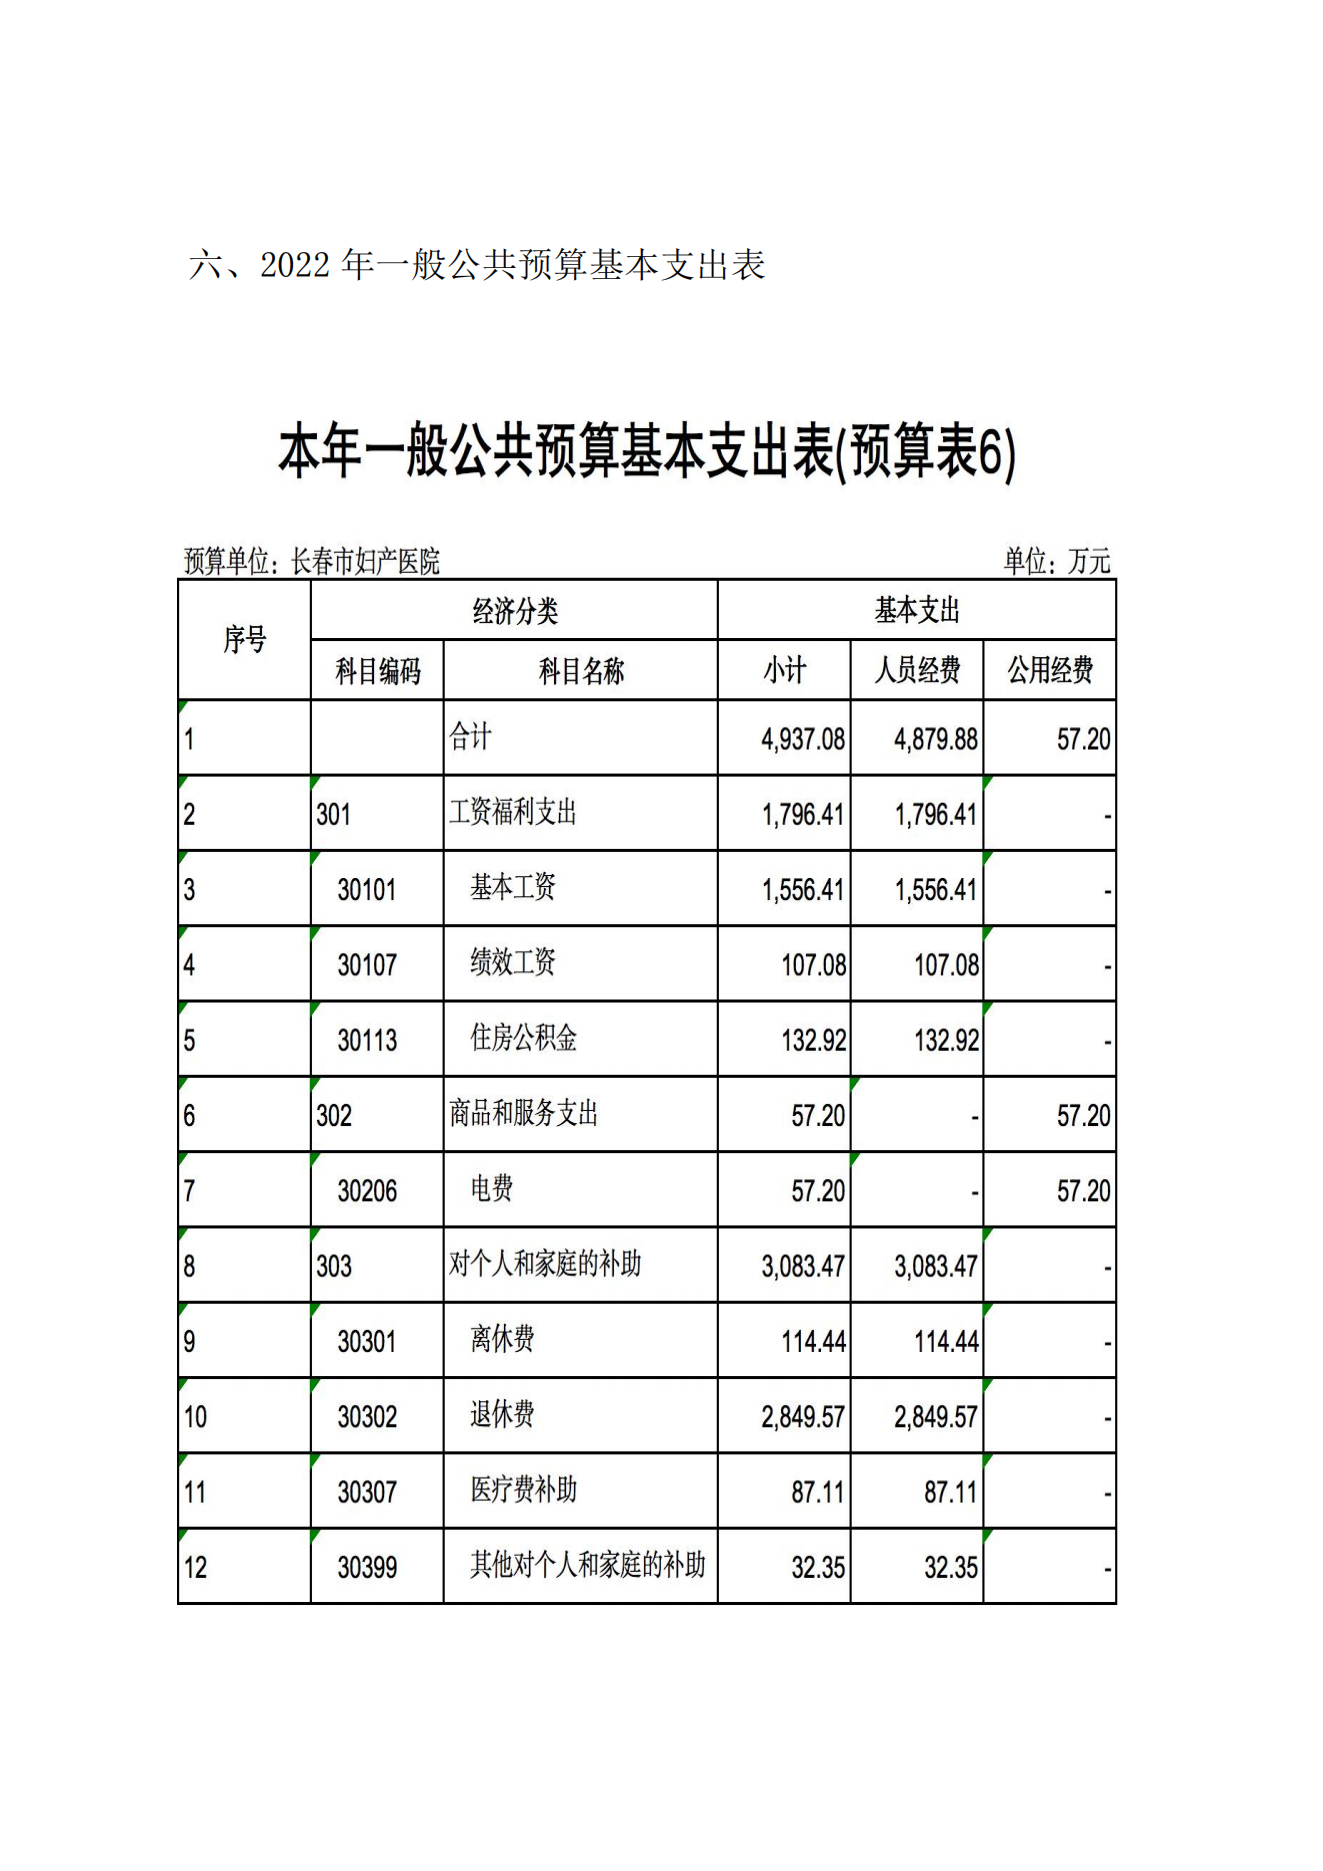 新长春市妇产医院2022年预算公开说明9.20_10.png